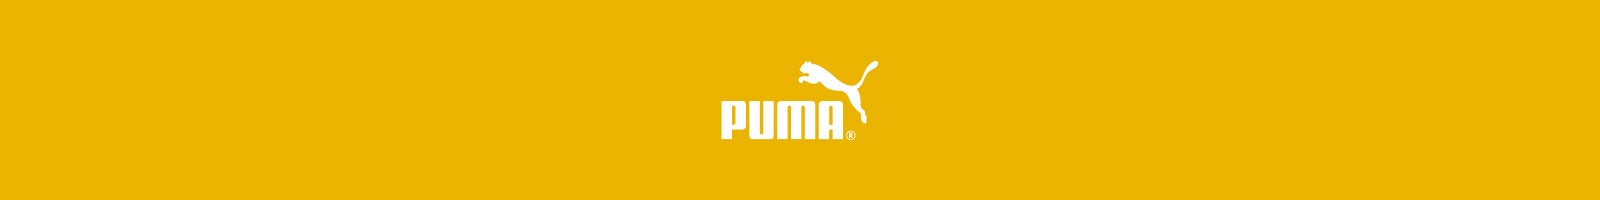 puma canada order status